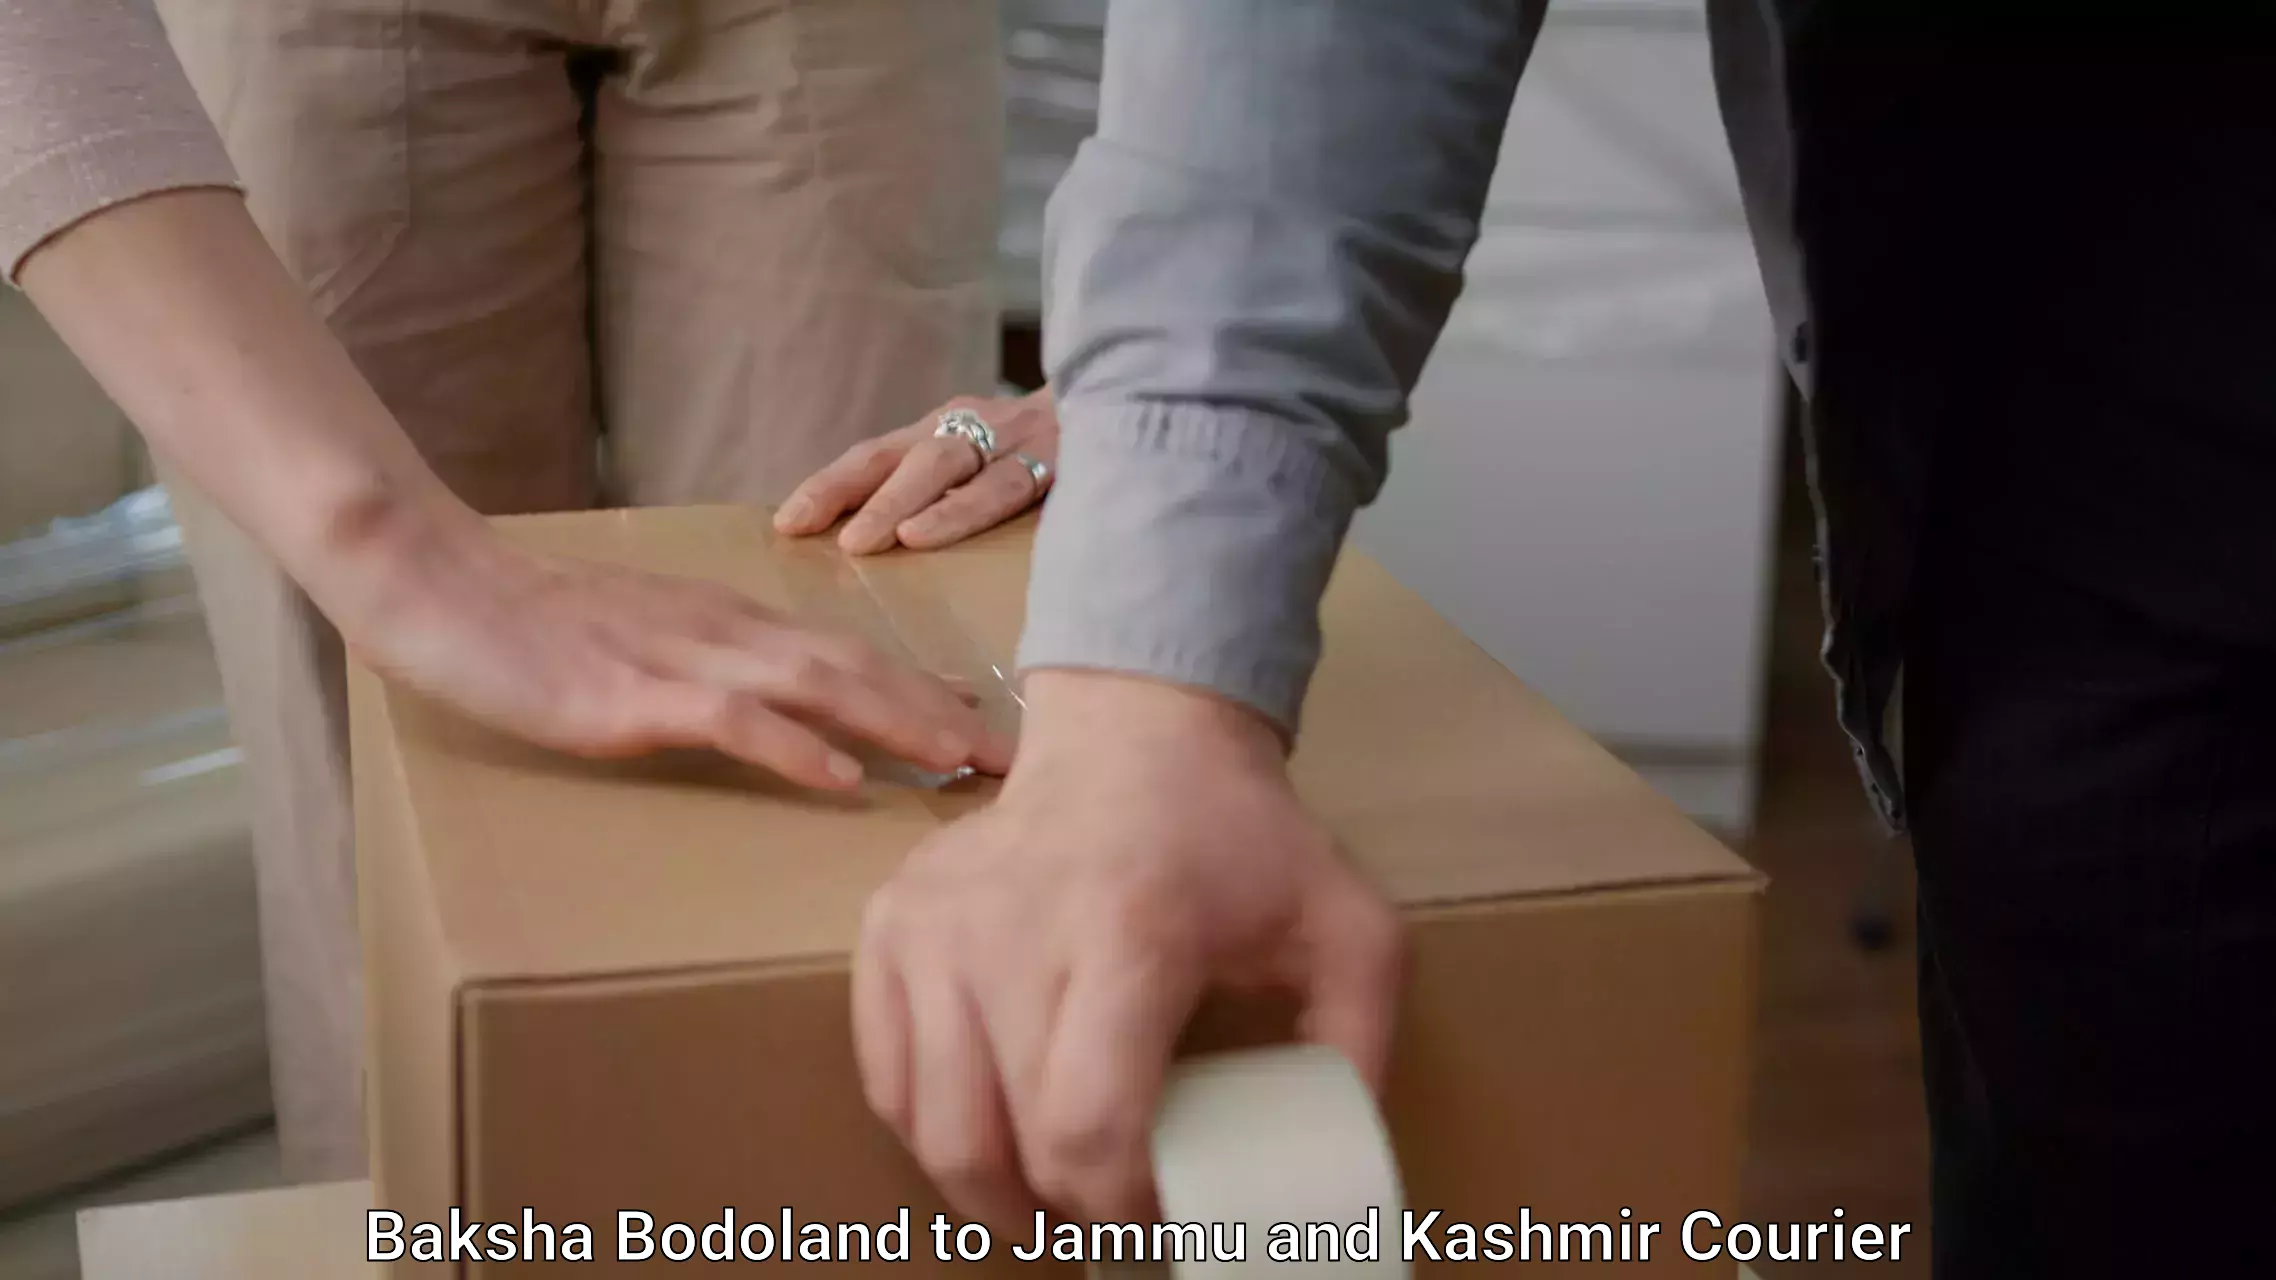 Furniture moving and handling in Baksha Bodoland to Jammu and Kashmir